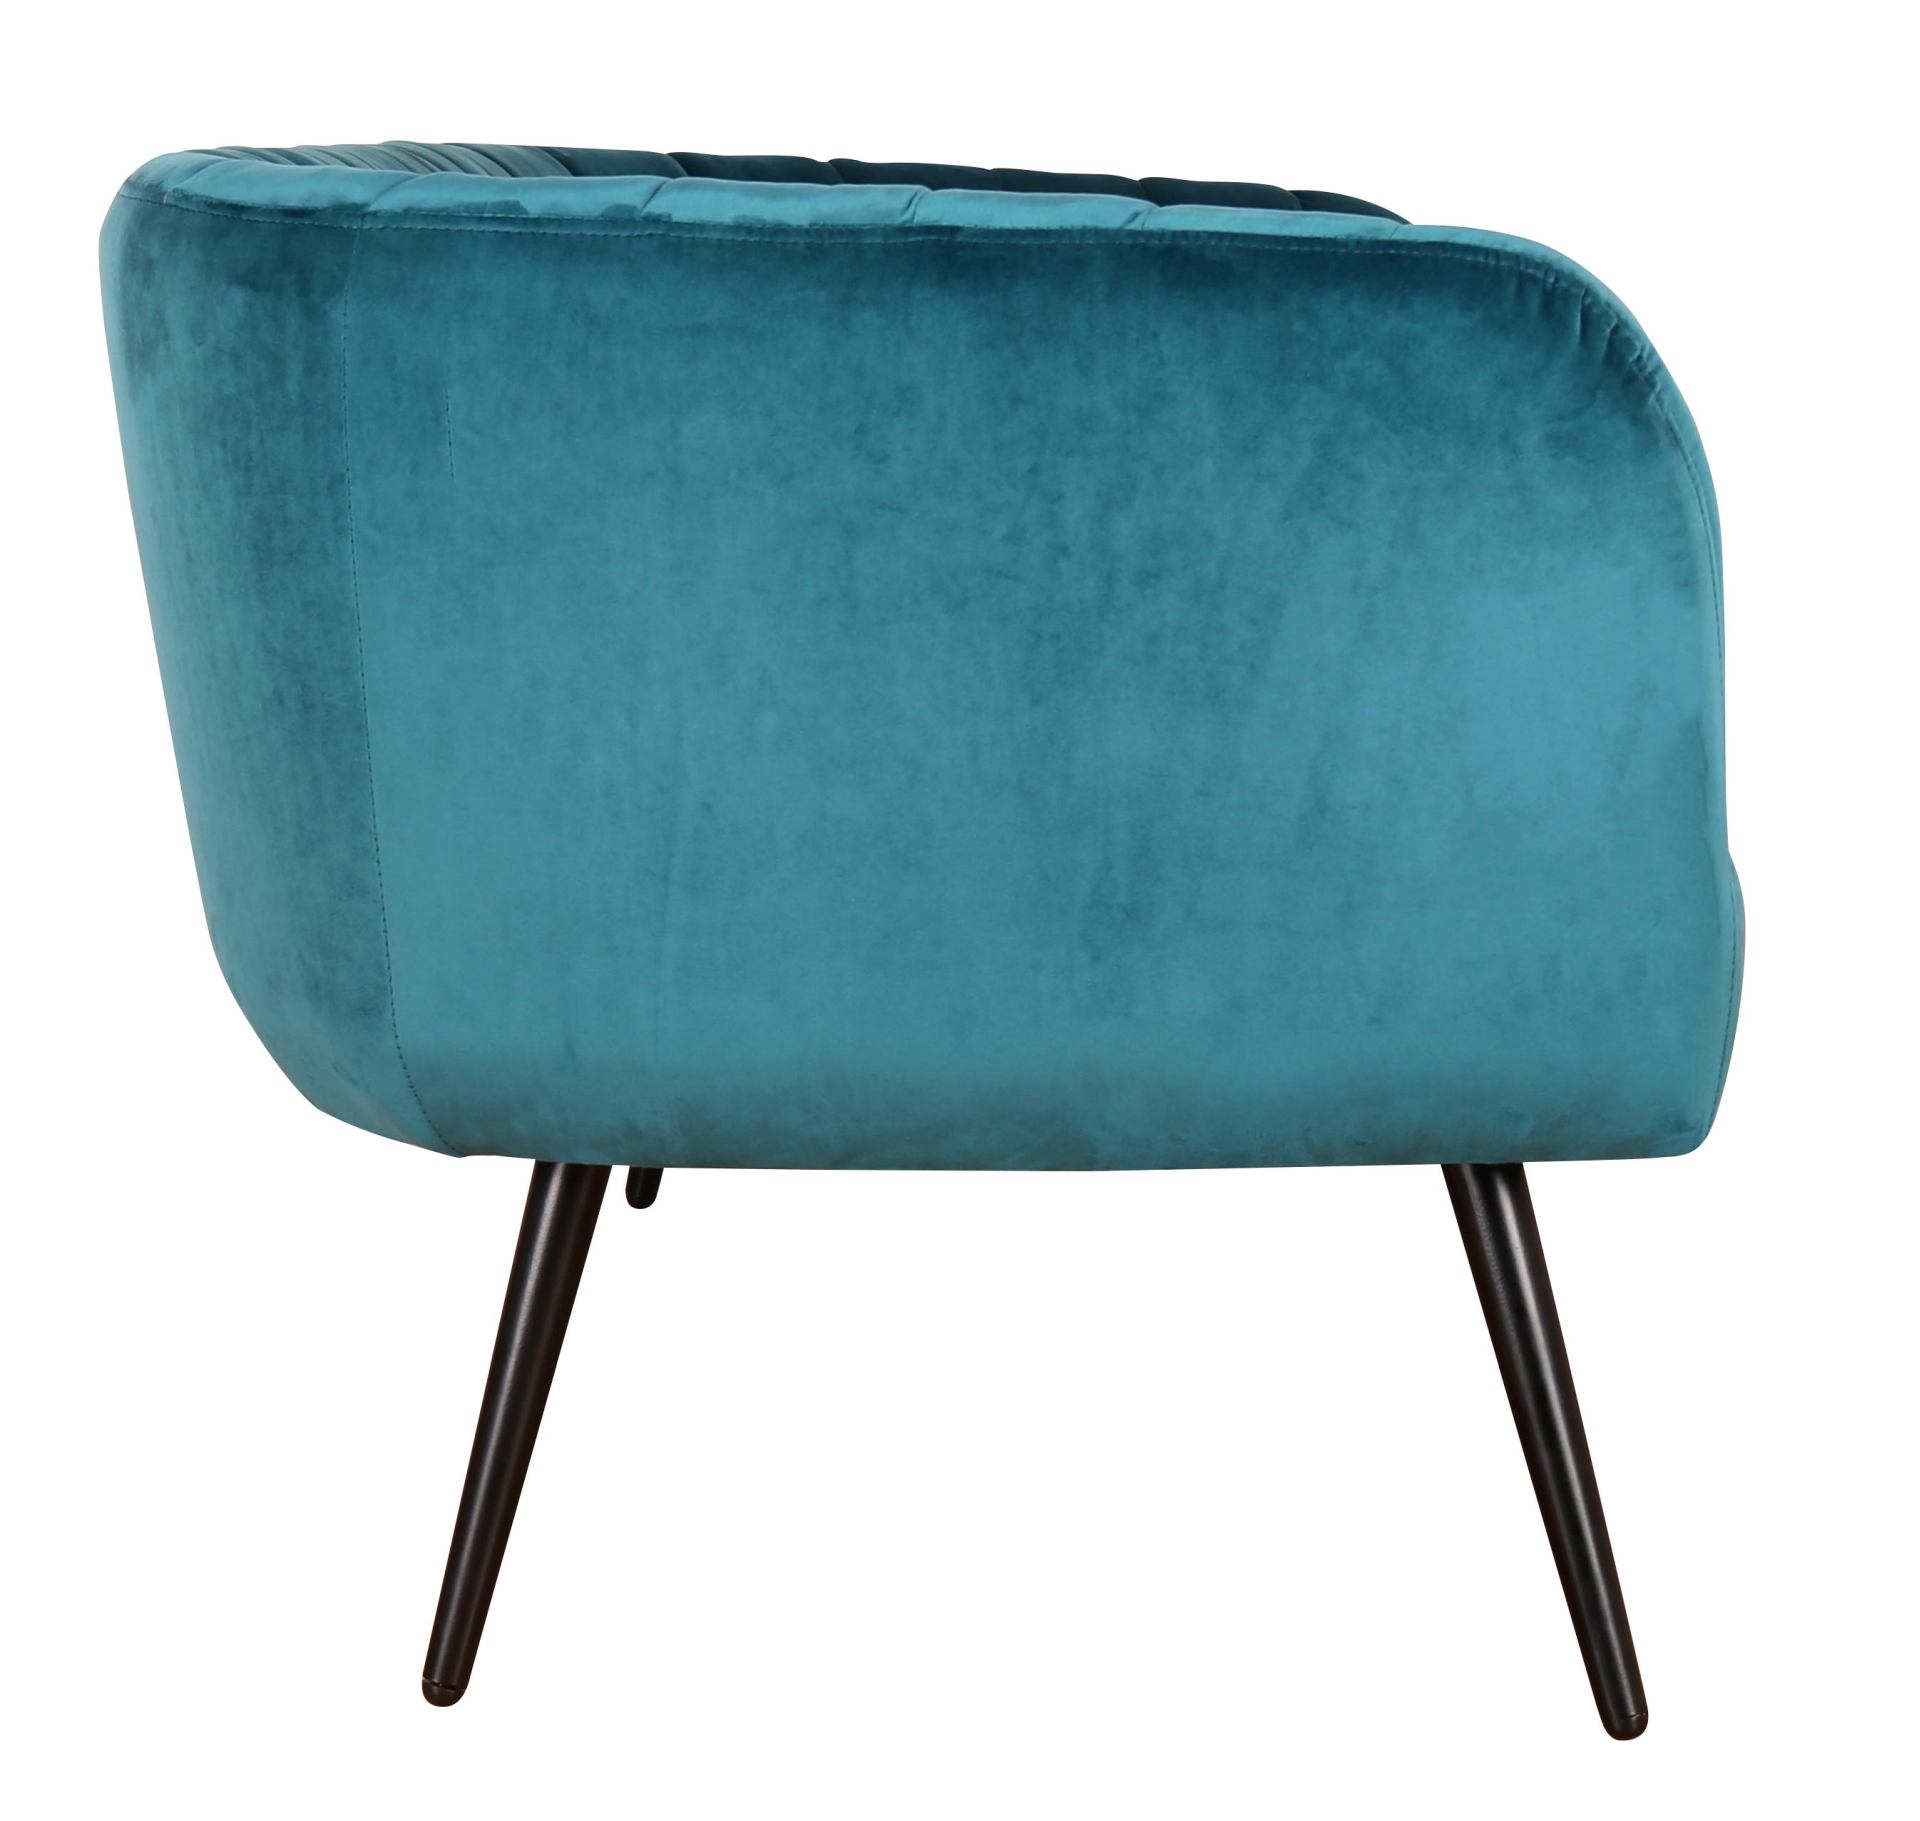 Das Sofa Avril überzeugt mit seinem modernen Design. Gefertigt wurde es aus Stoff in Samt-Optik, welcher einen blauen Farbton besitzt. Das Gestell ist aus Metall und hat eine schwarze Farbe. Das Sofa ist in der Ausführung als 3-Sitzer. Die Breite beträgt 